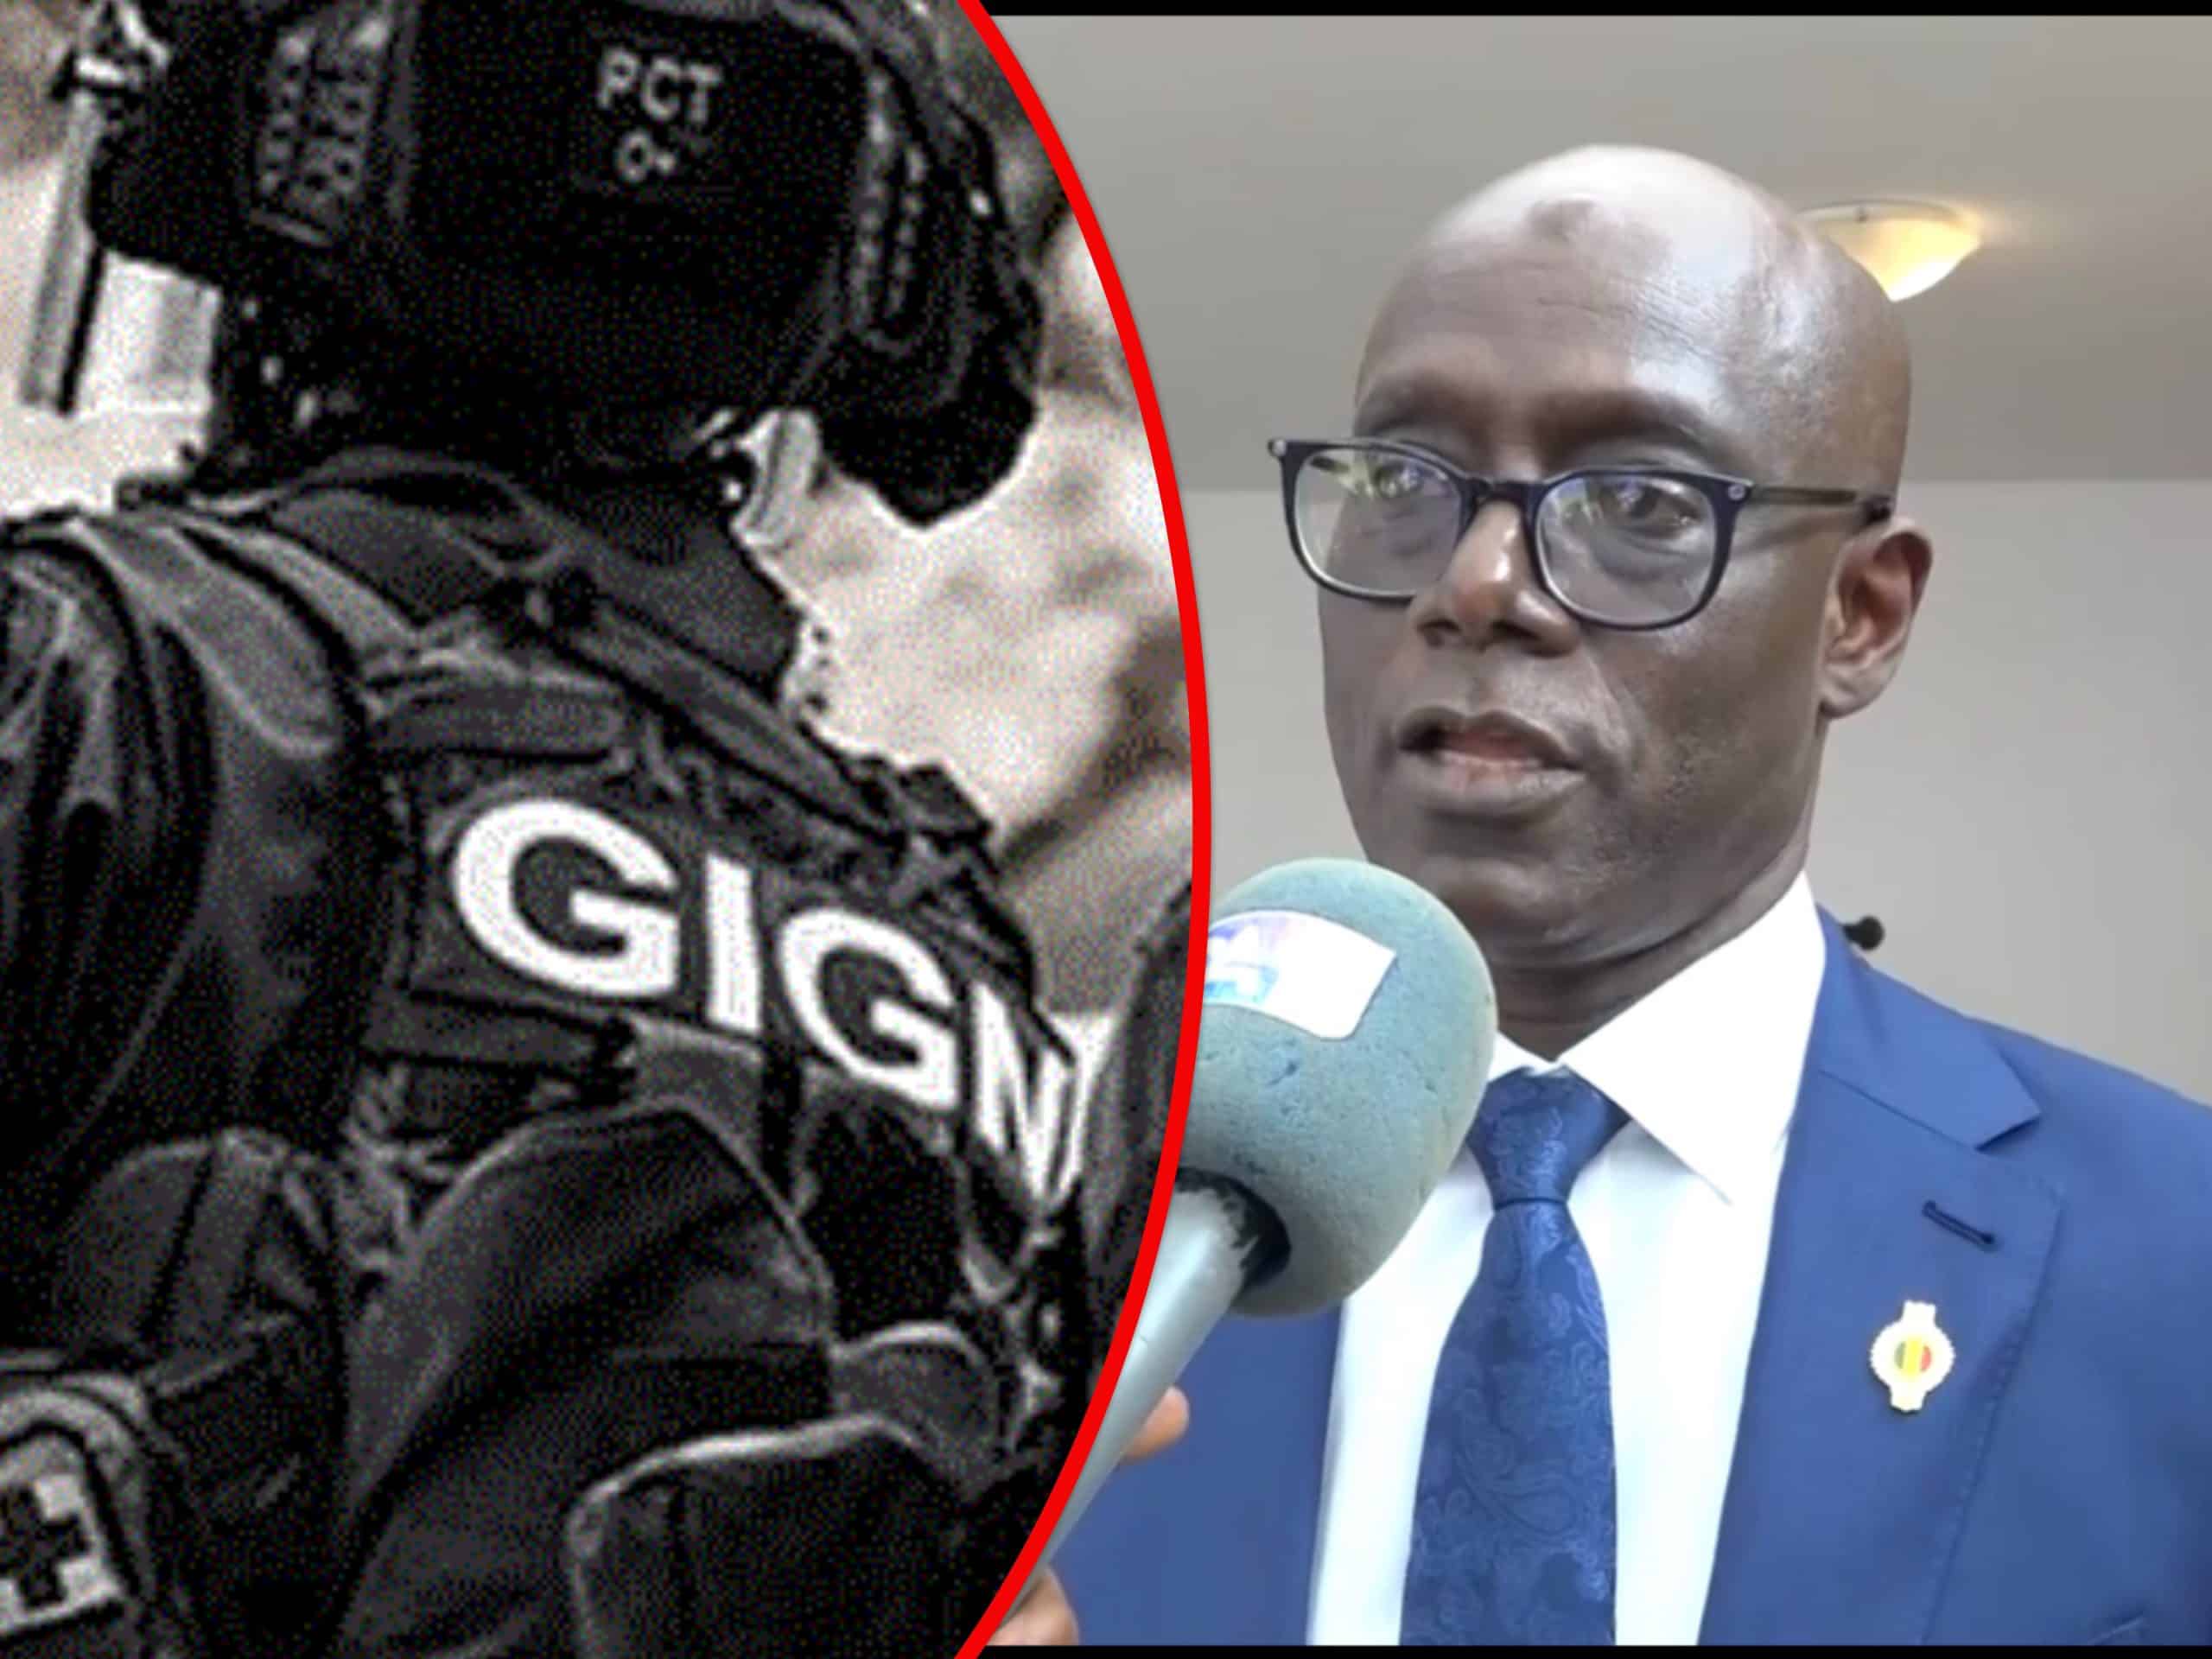 Trafic présumé de faux billets : "Une tache sur l'intégrité du GIGN...", (Thierno Alassane Sall)